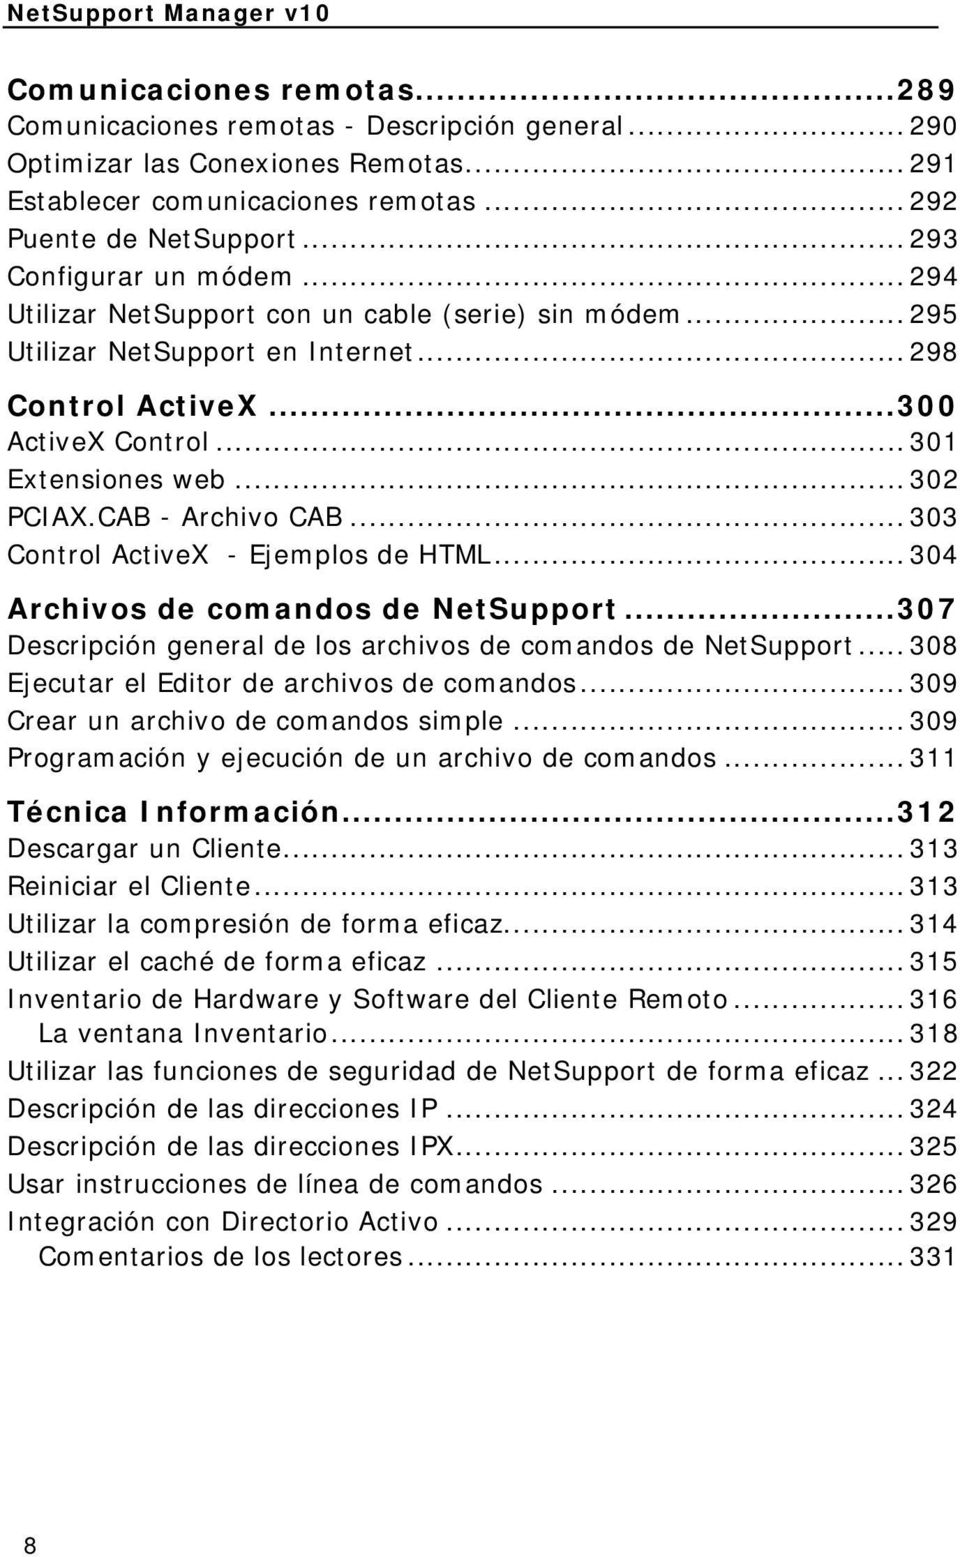 .. 302 PCIAX.CAB - Archivo CAB... 303 Control ActiveX - Ejemplos de HTML... 304 Archivos de comandos de NetSupport...307 Descripción general de los archivos de comandos de NetSupport.